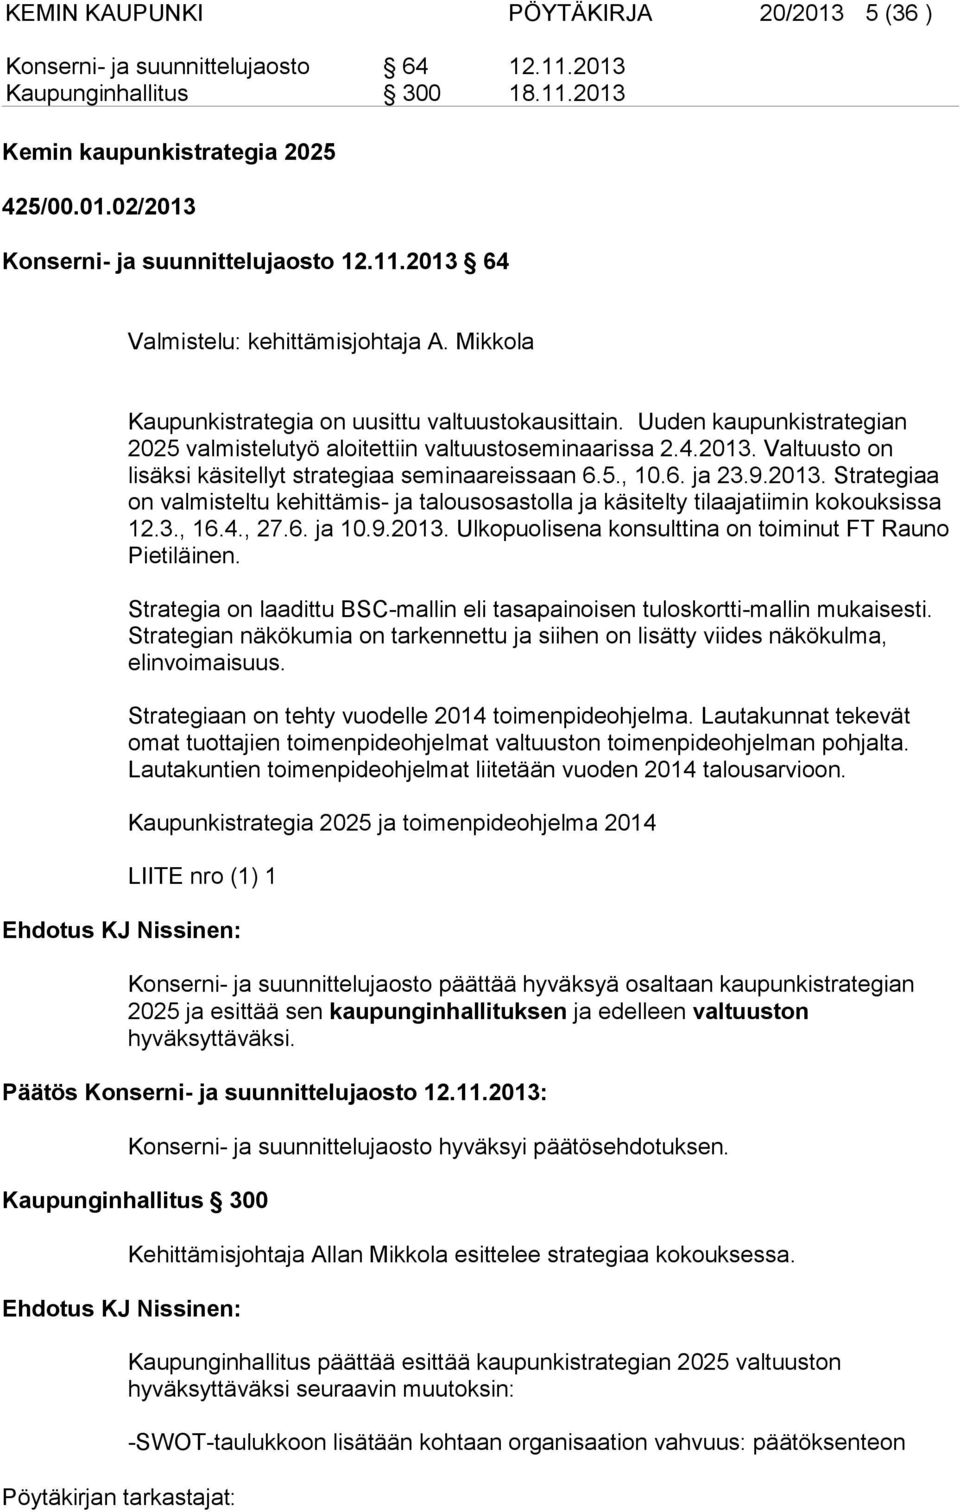 5., 10.6. ja 23.9.2013. Strategiaa on valmisteltu kehittämis- ja talousosastolla ja käsitelty tilaajatiimin kokouksissa 12.3., 16.4., 27.6. ja 10.9.2013. Ulkopuolisena konsulttina on toiminut FT Rauno Pietiläinen.